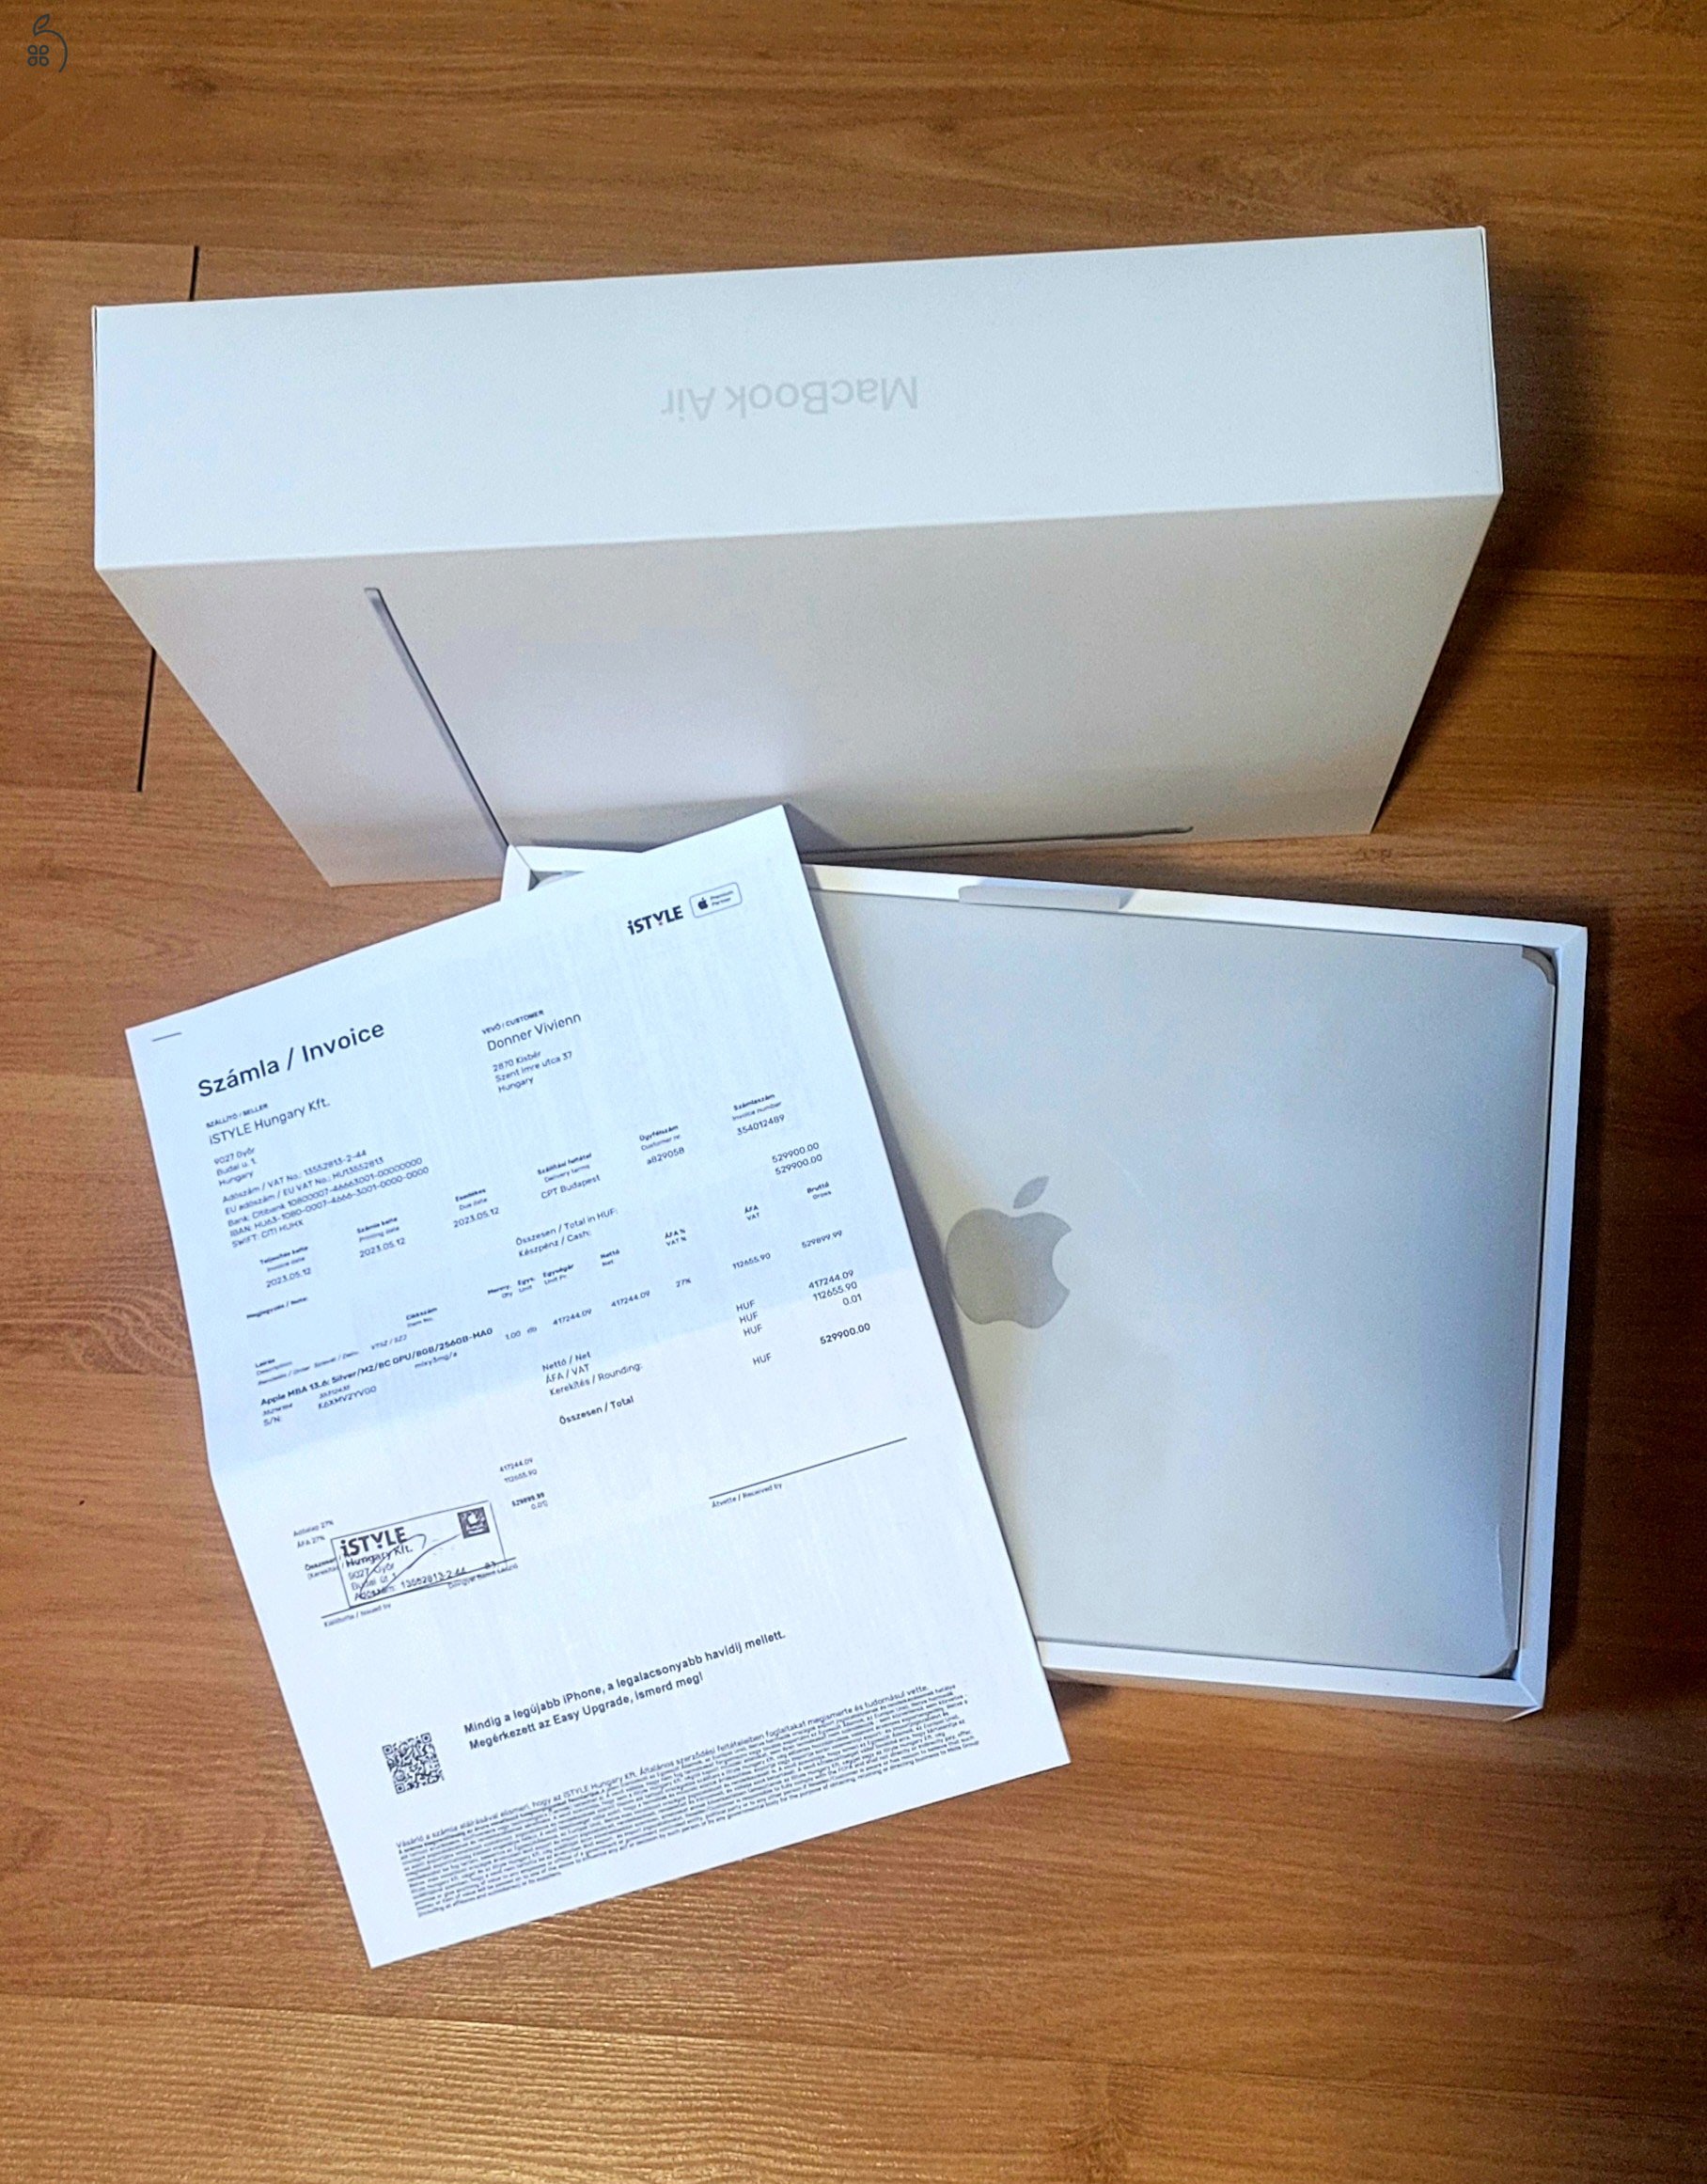 MacBook Air 13,6